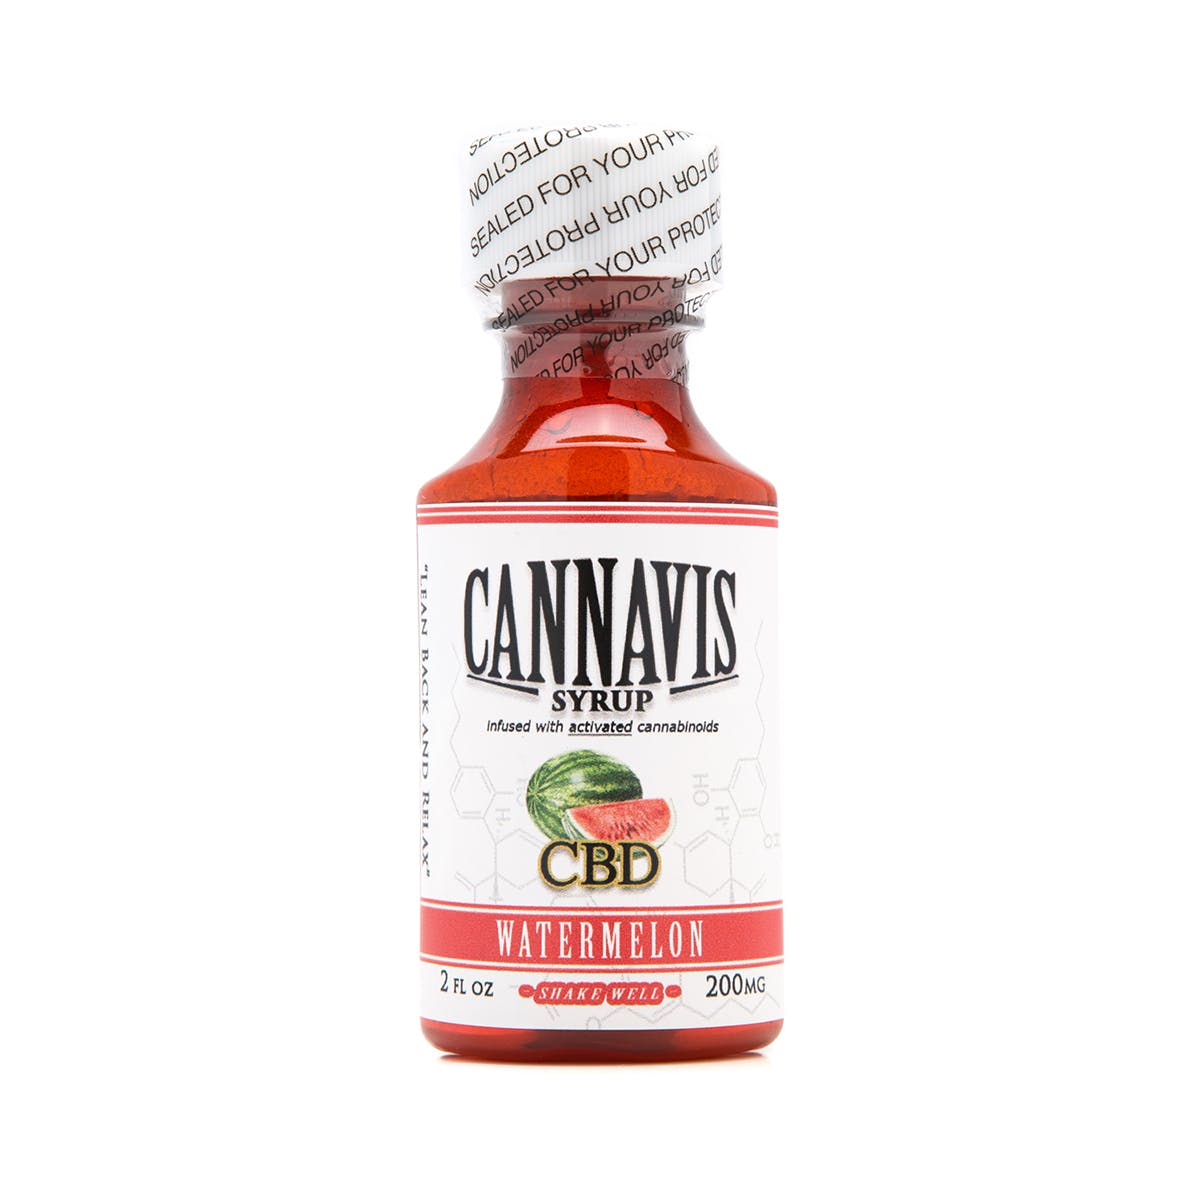 marijuana-dispensaries-lol-20-cap-in-rialto-cannavis-syrup-2c-cbd-watermelon-200mg